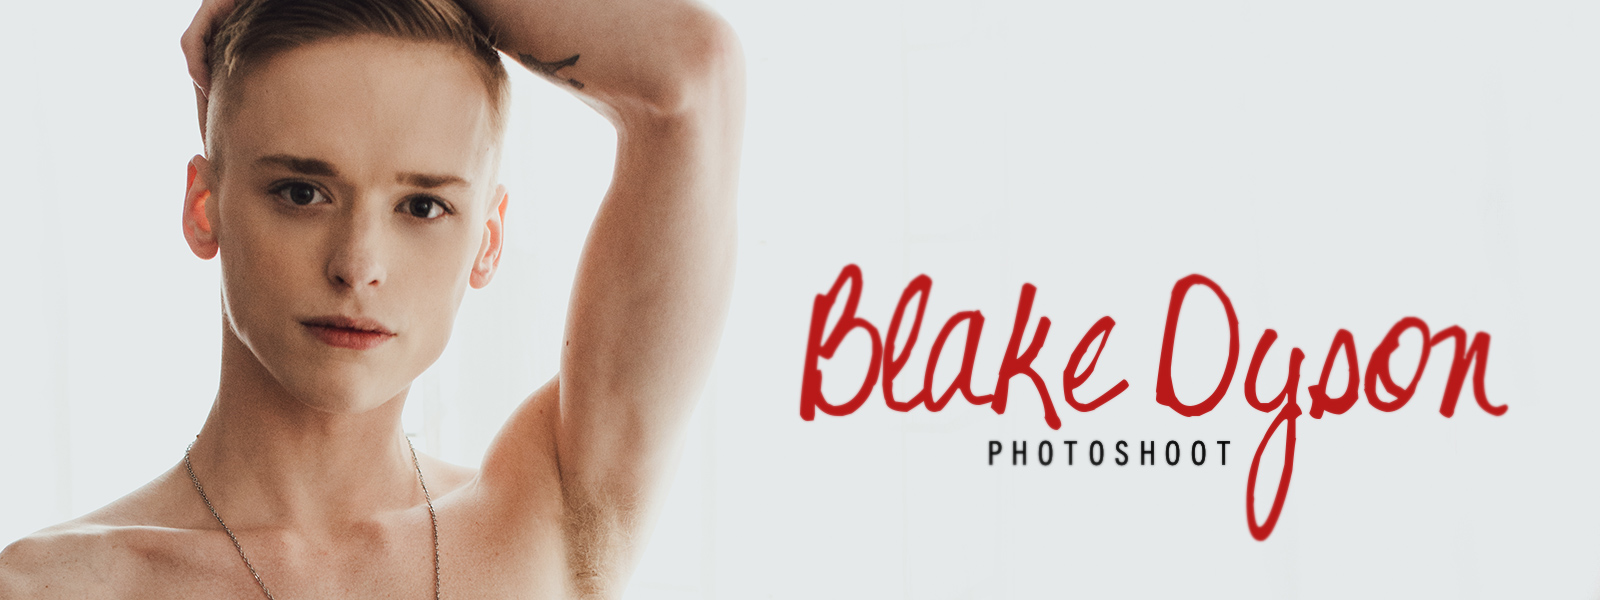 Blake Dyson Photoshoot